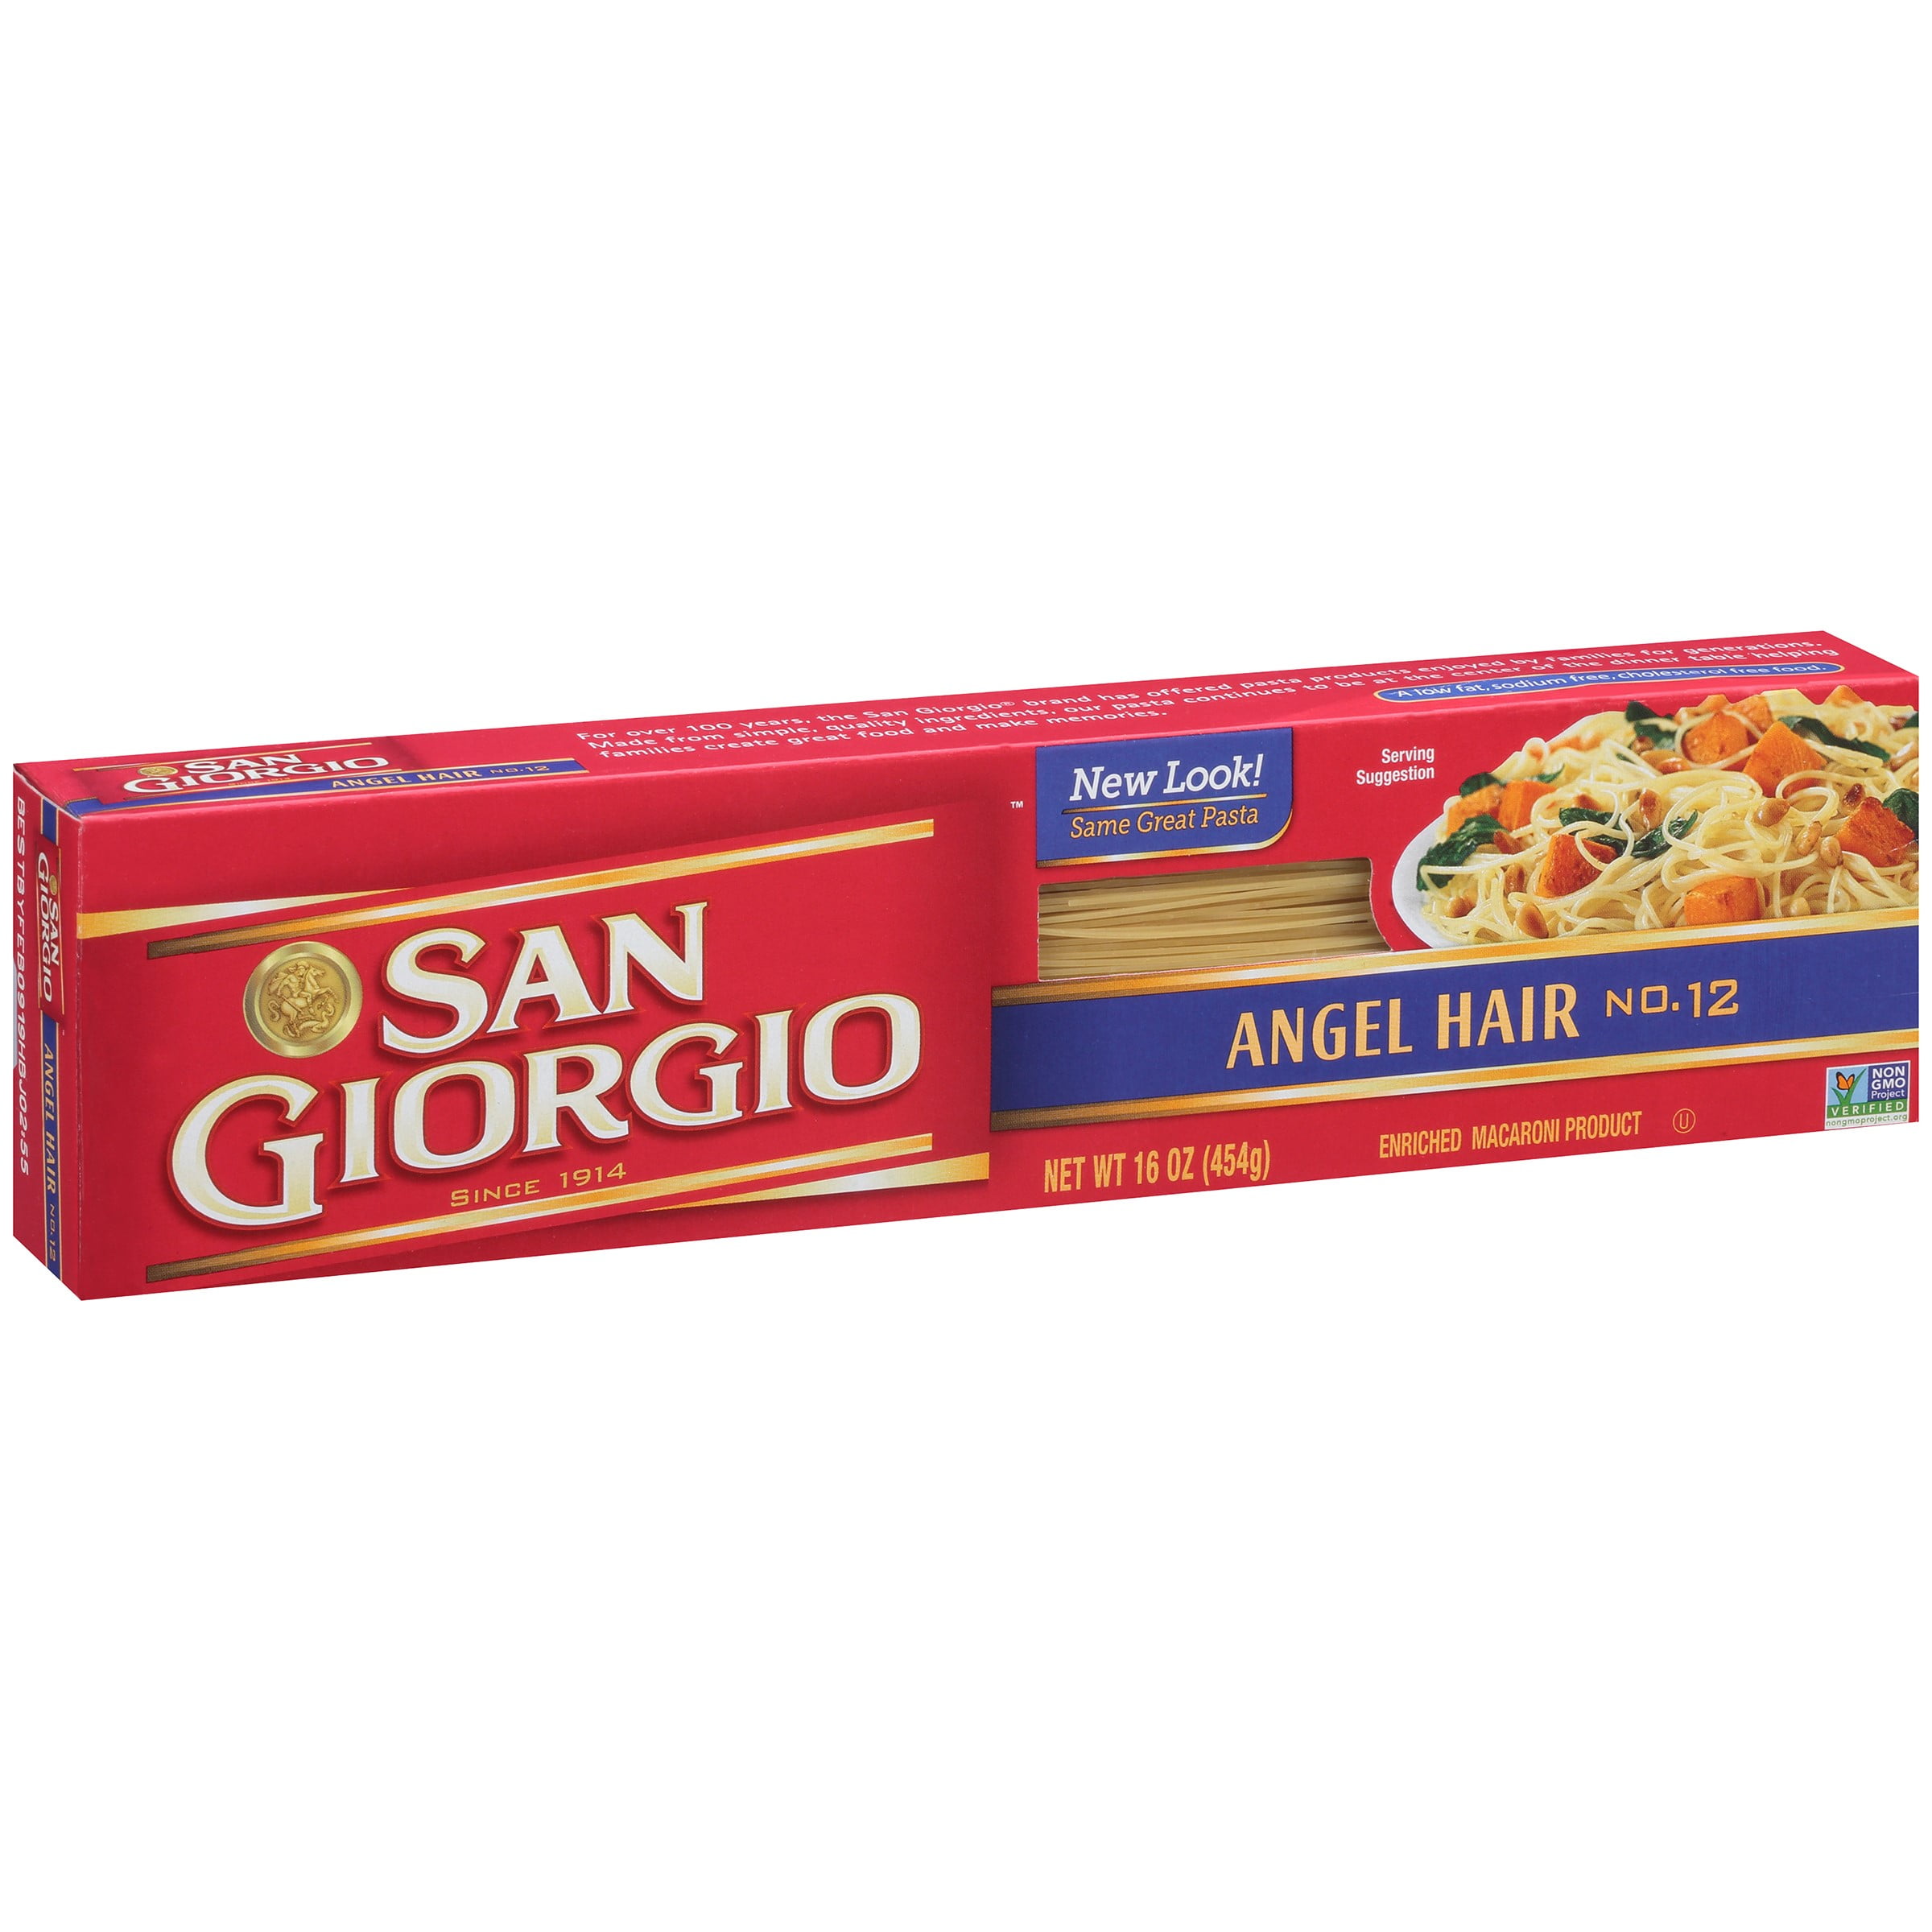 San Giorgio Thin Angel Hair Pasta, 16 Ounce Box